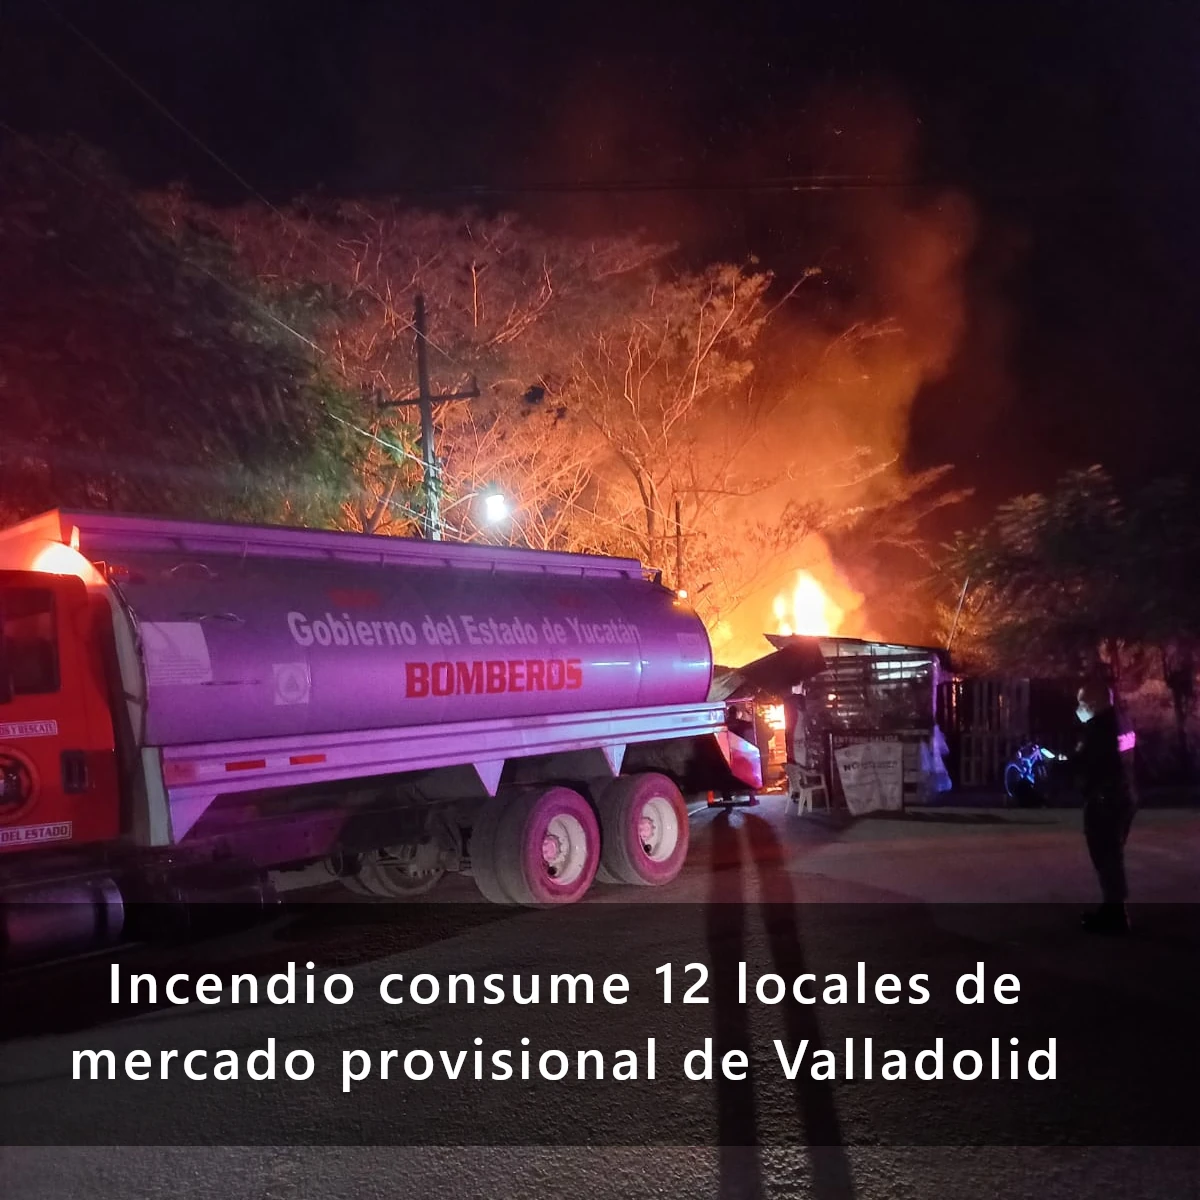 Incendio consume 12 locales del Mercado provisional de Valladolid Yucatán